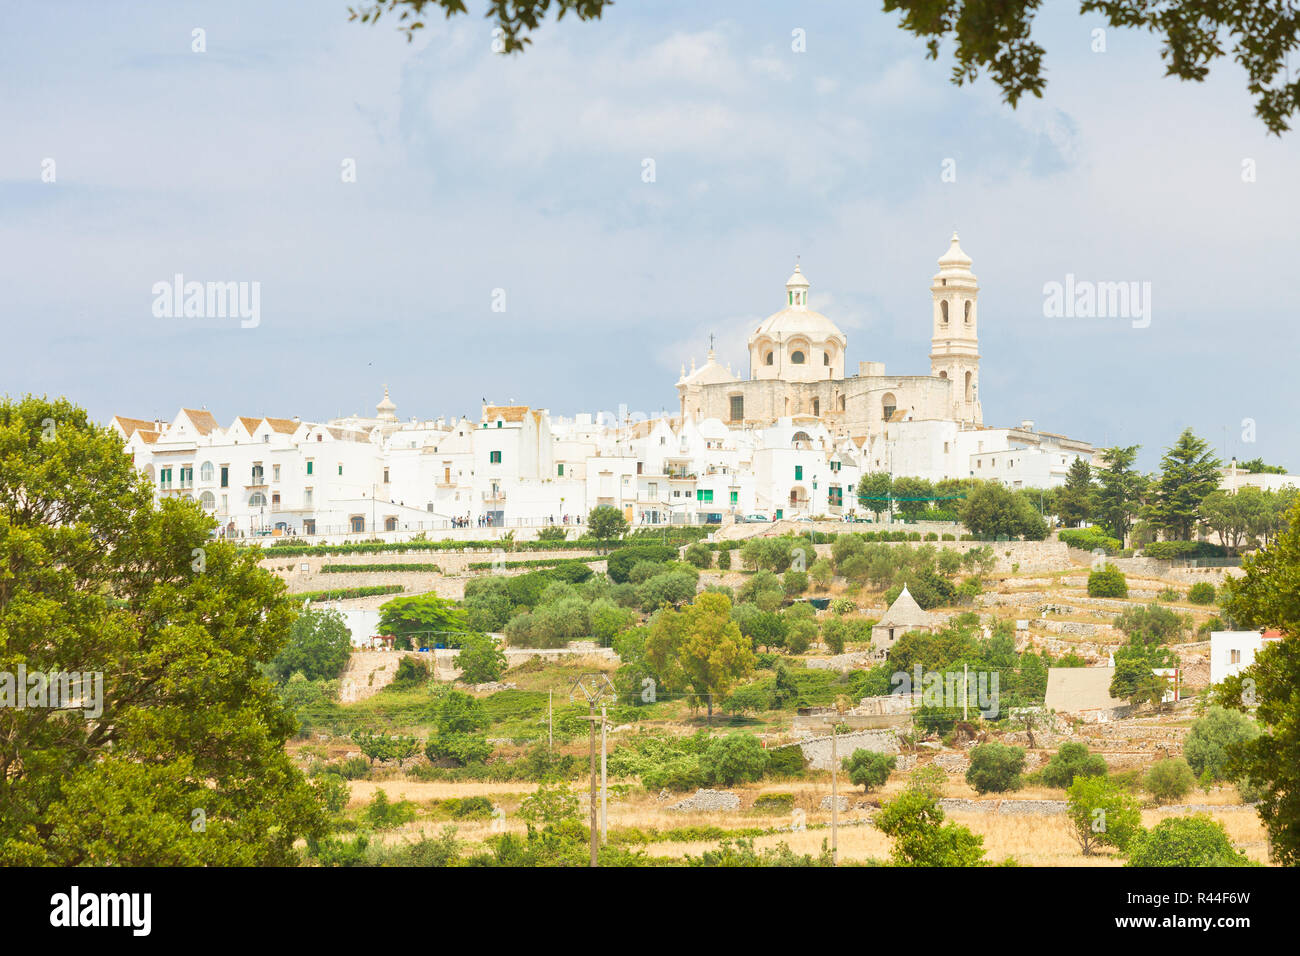 Lecce, Apulien, Italien - Skyline von Locorotondo von der Landseite Stockfoto